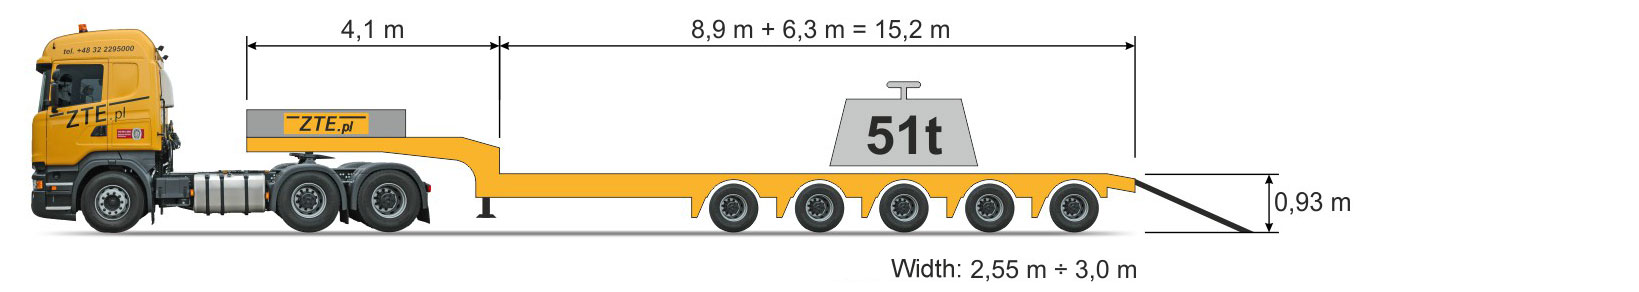 5-axle Semi type semi-trailer